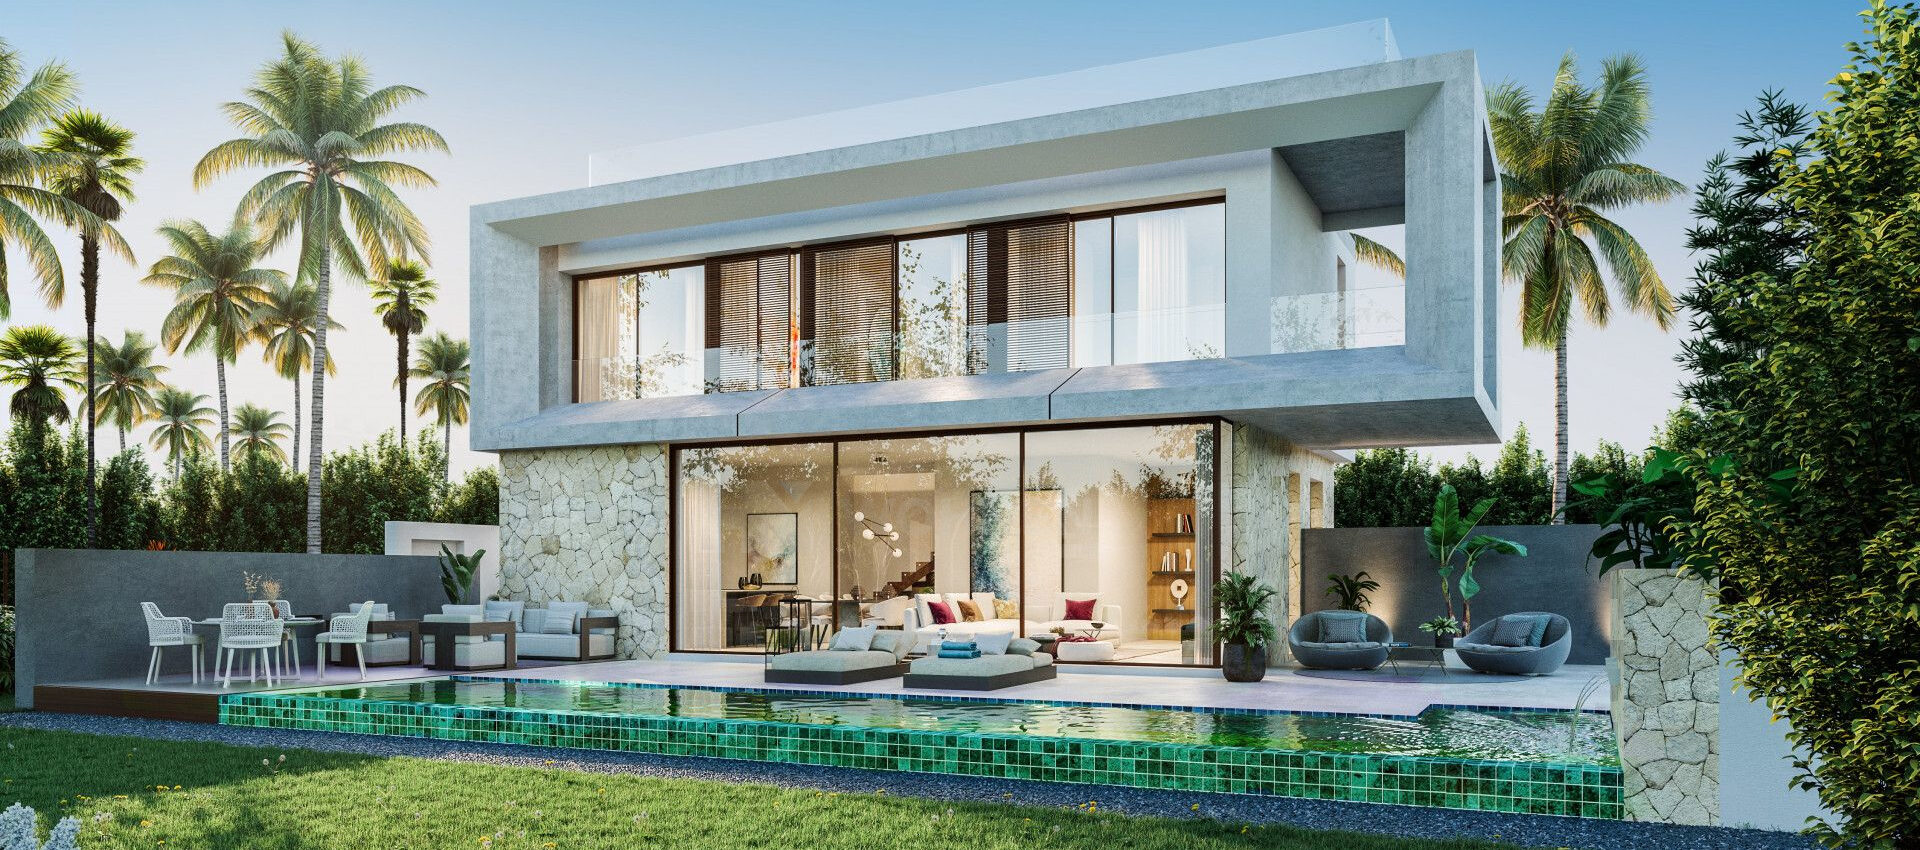 Fabelhaftes Luxusvillenprojekt in einer der prestigeträchtigsten Wohngegenden von Marbella